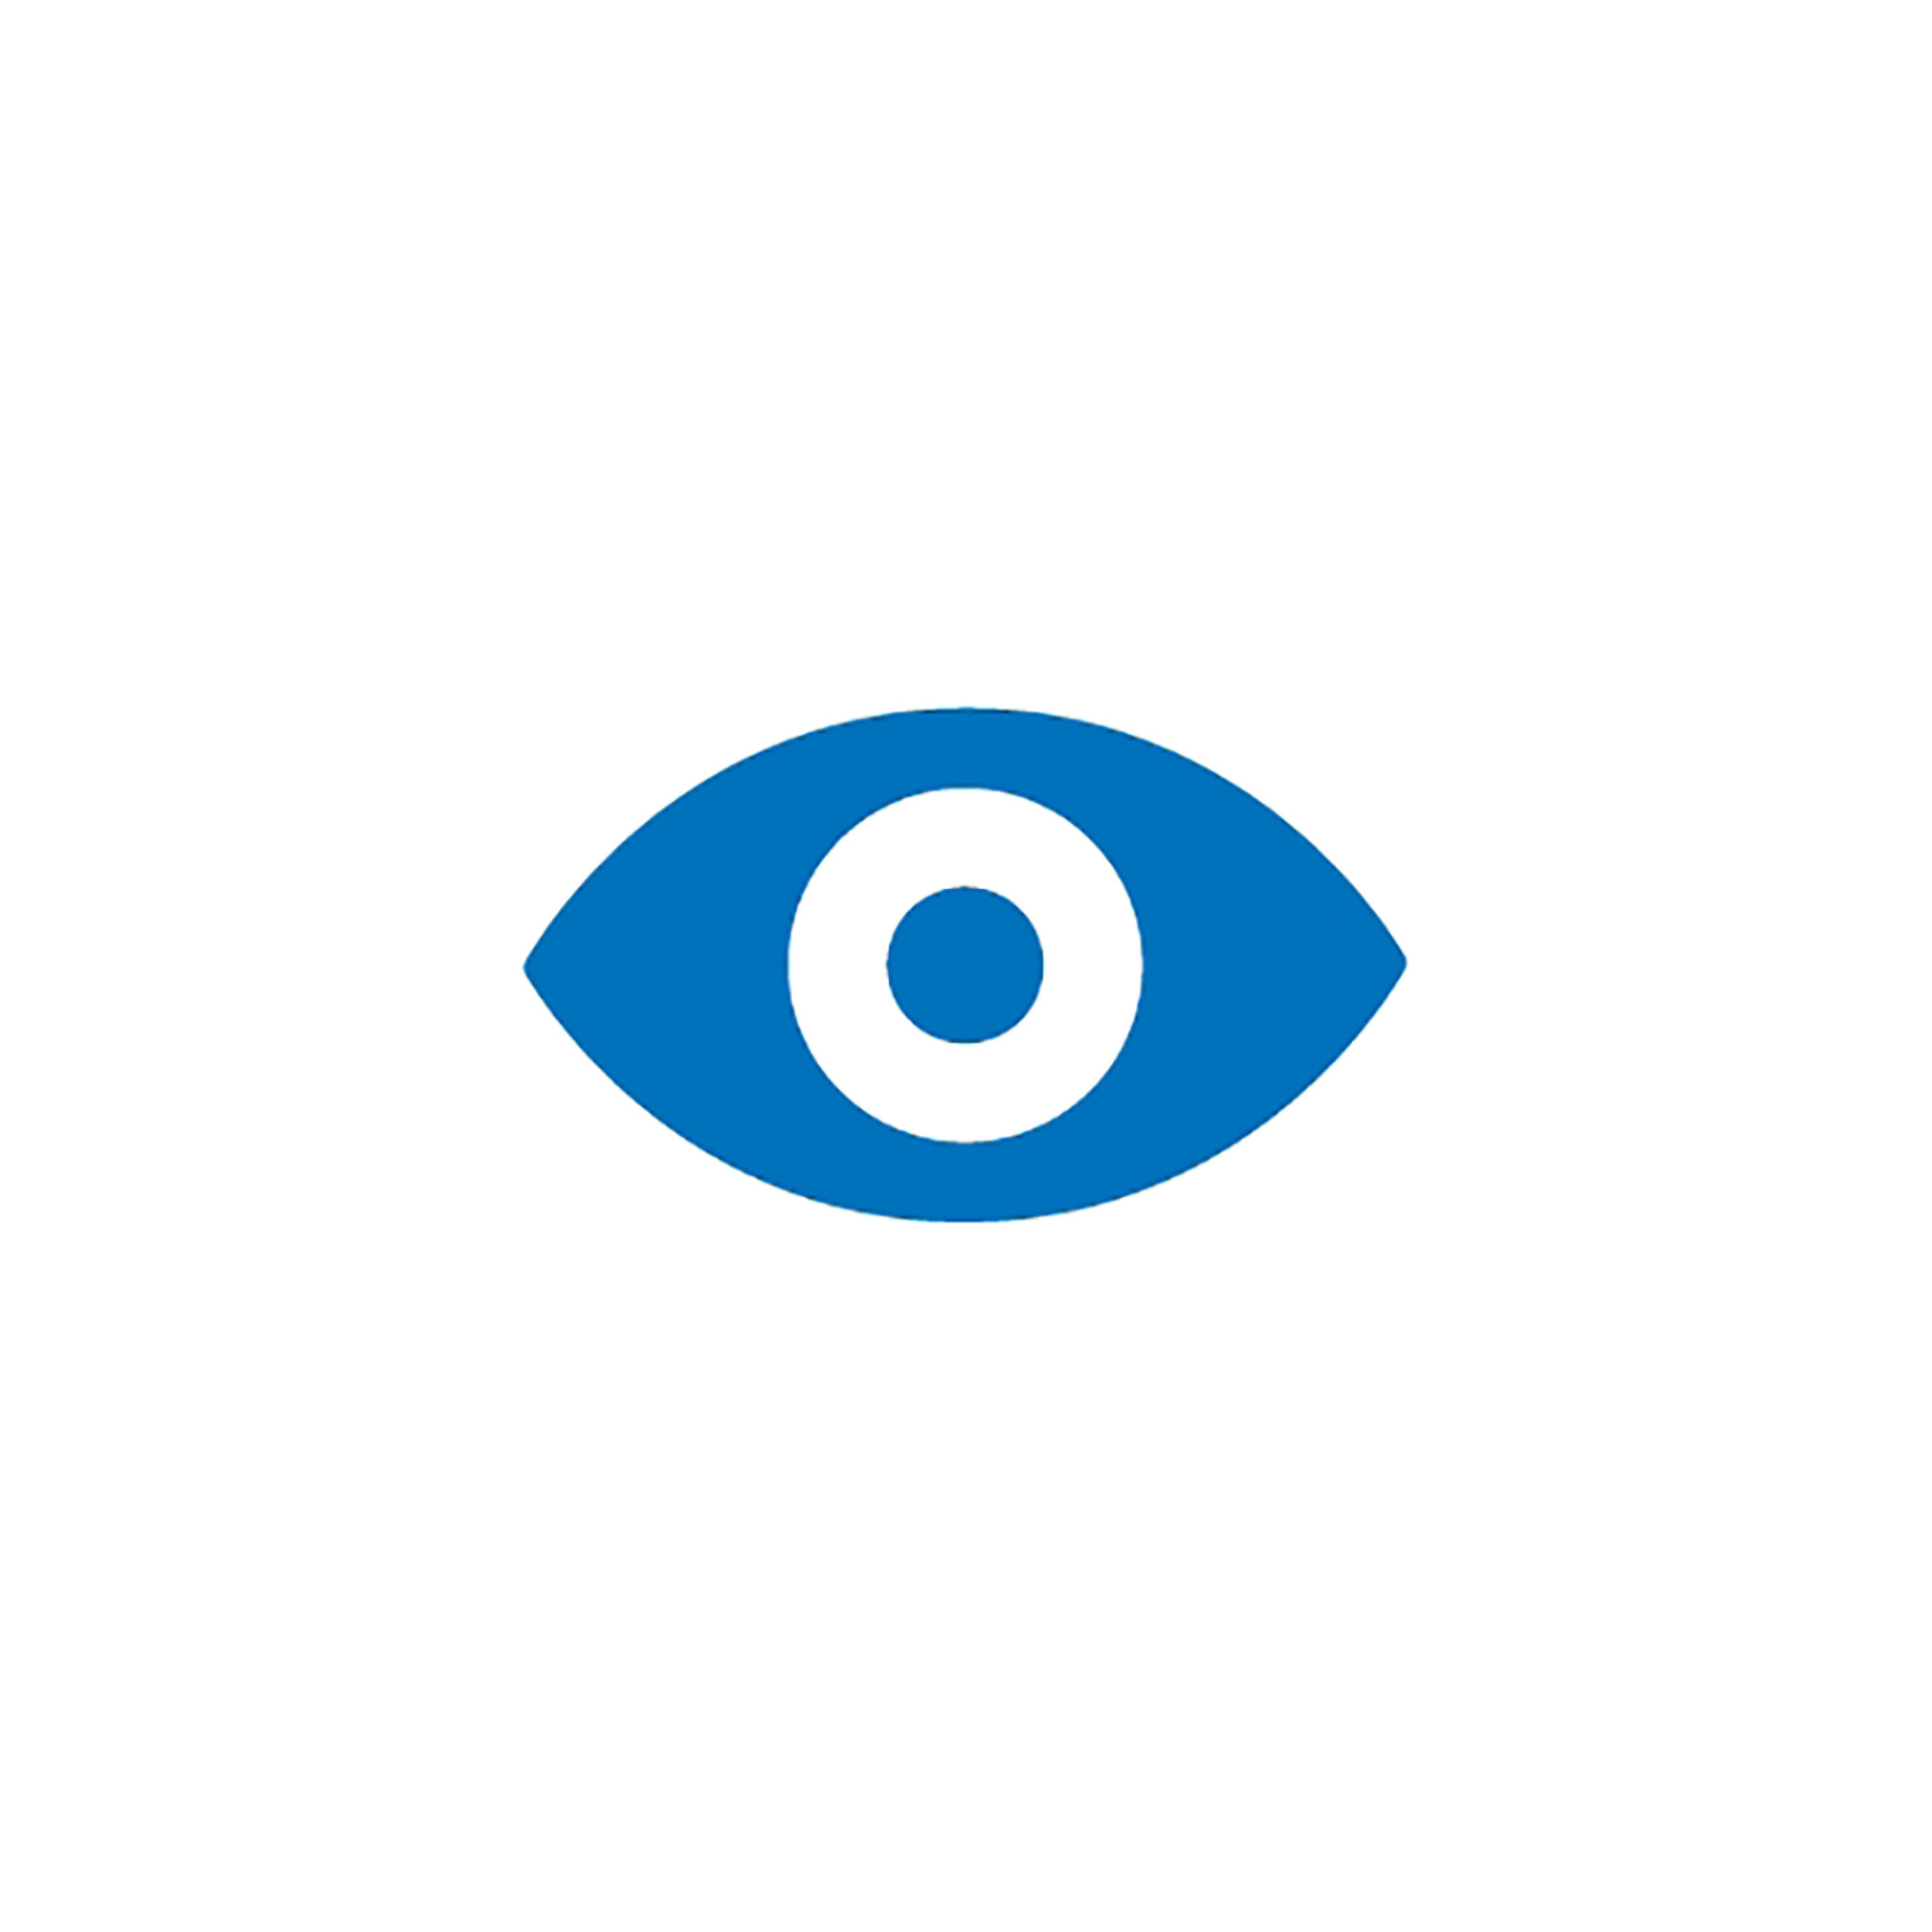 Piktogramm mit blauen Auge auf weissen Hintergrund